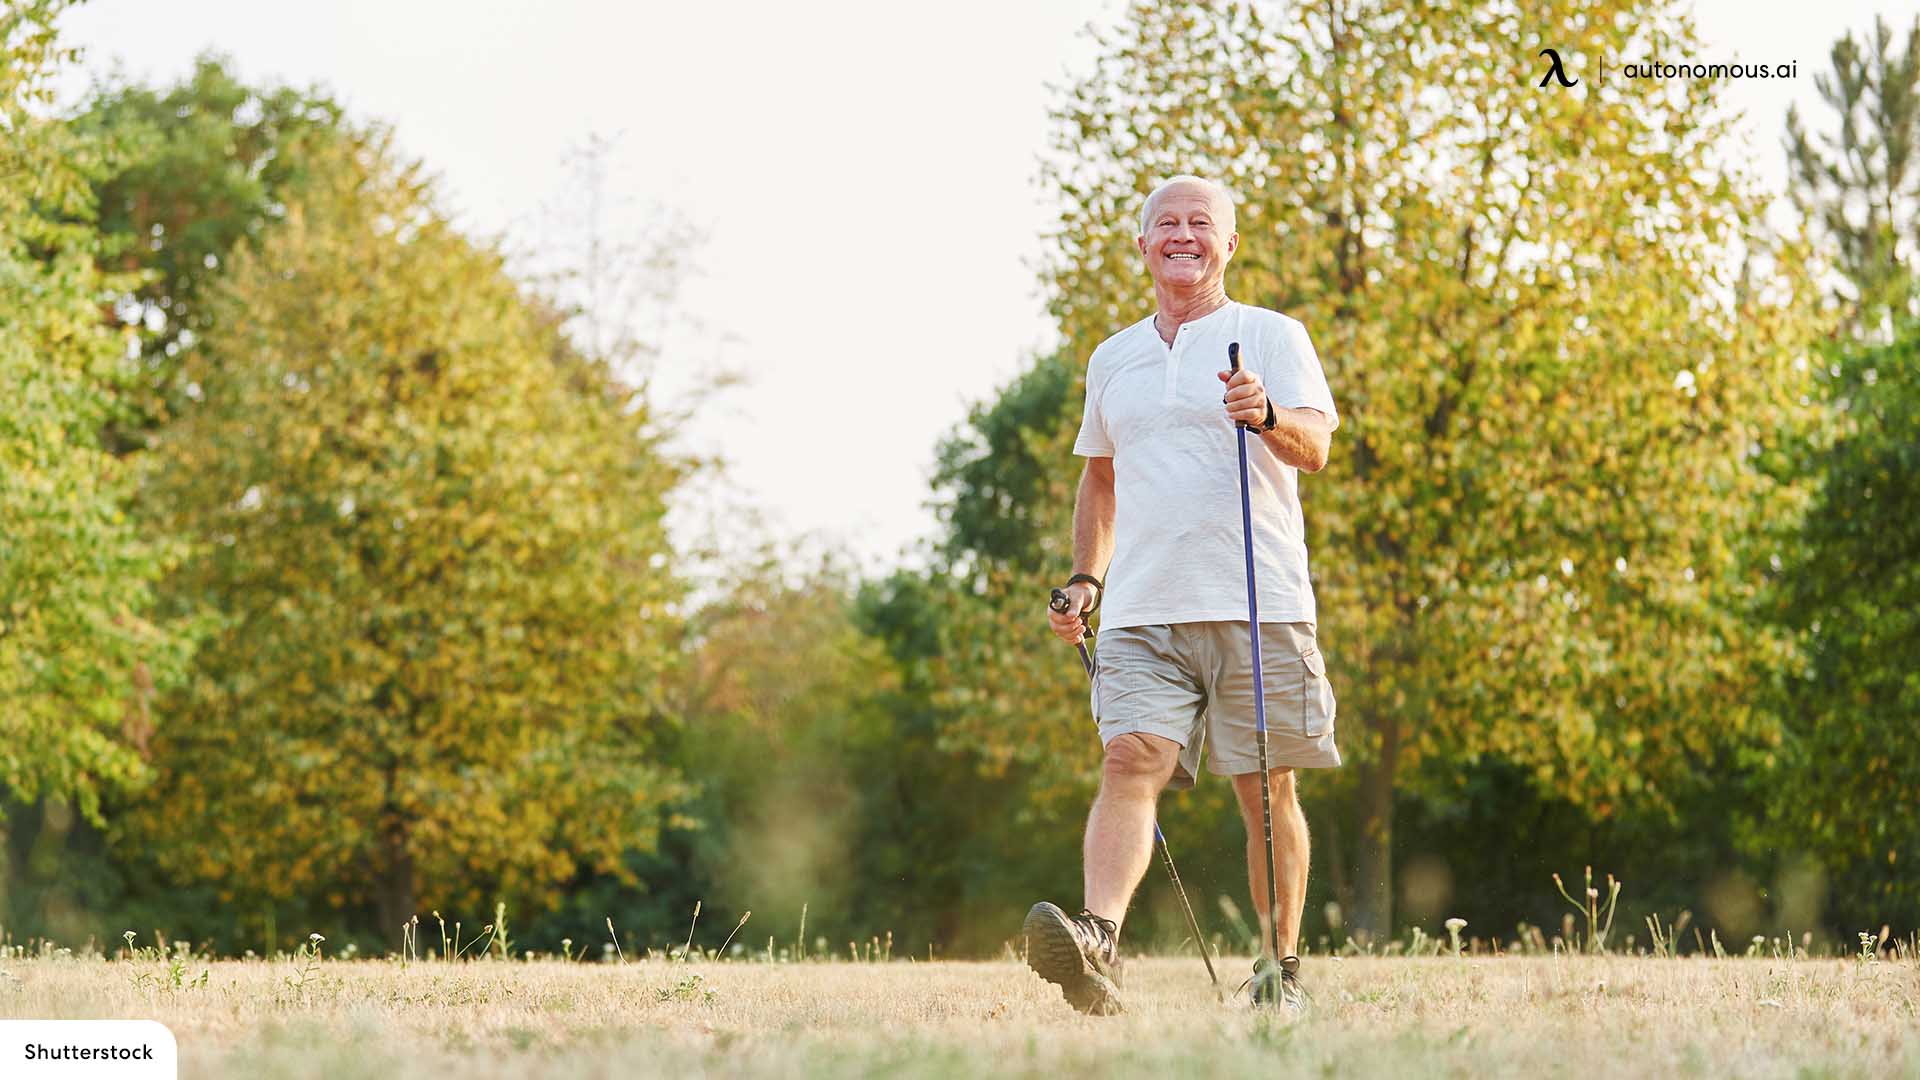 Walking / Movement ergonomic for elderly